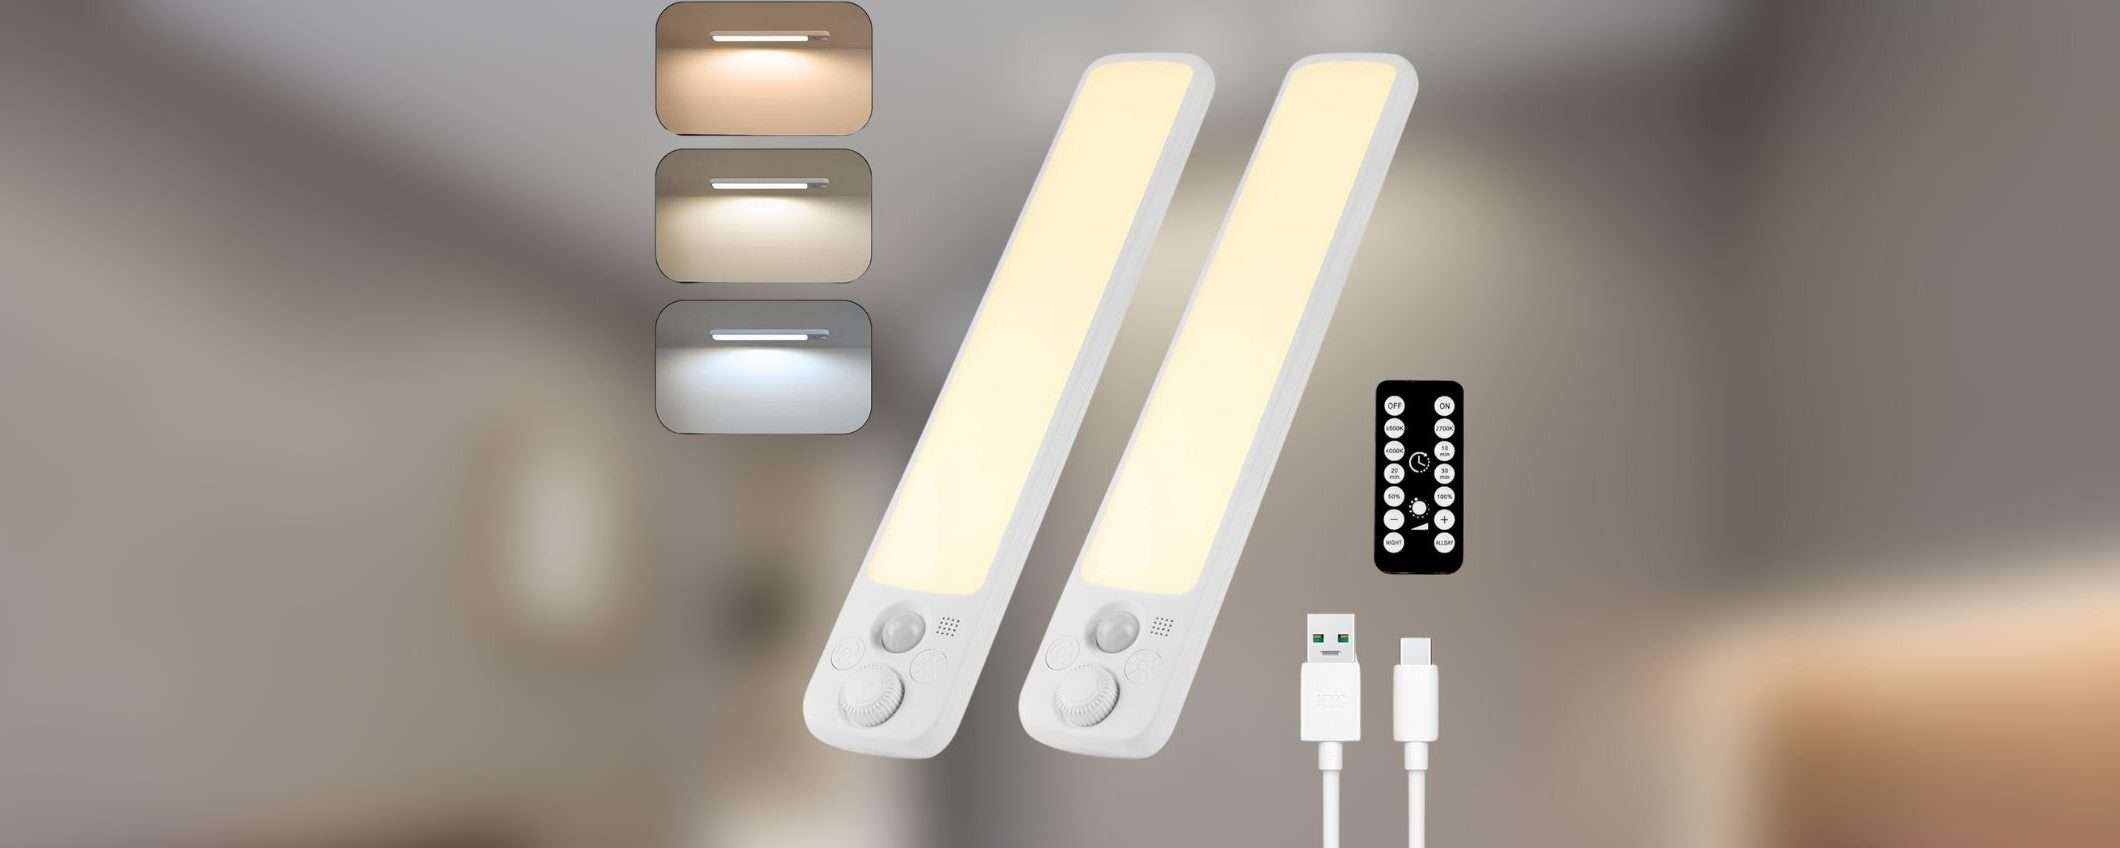 Luce LED per armadio, sottopensili o scale: offerta a 19,99€ su Amazon